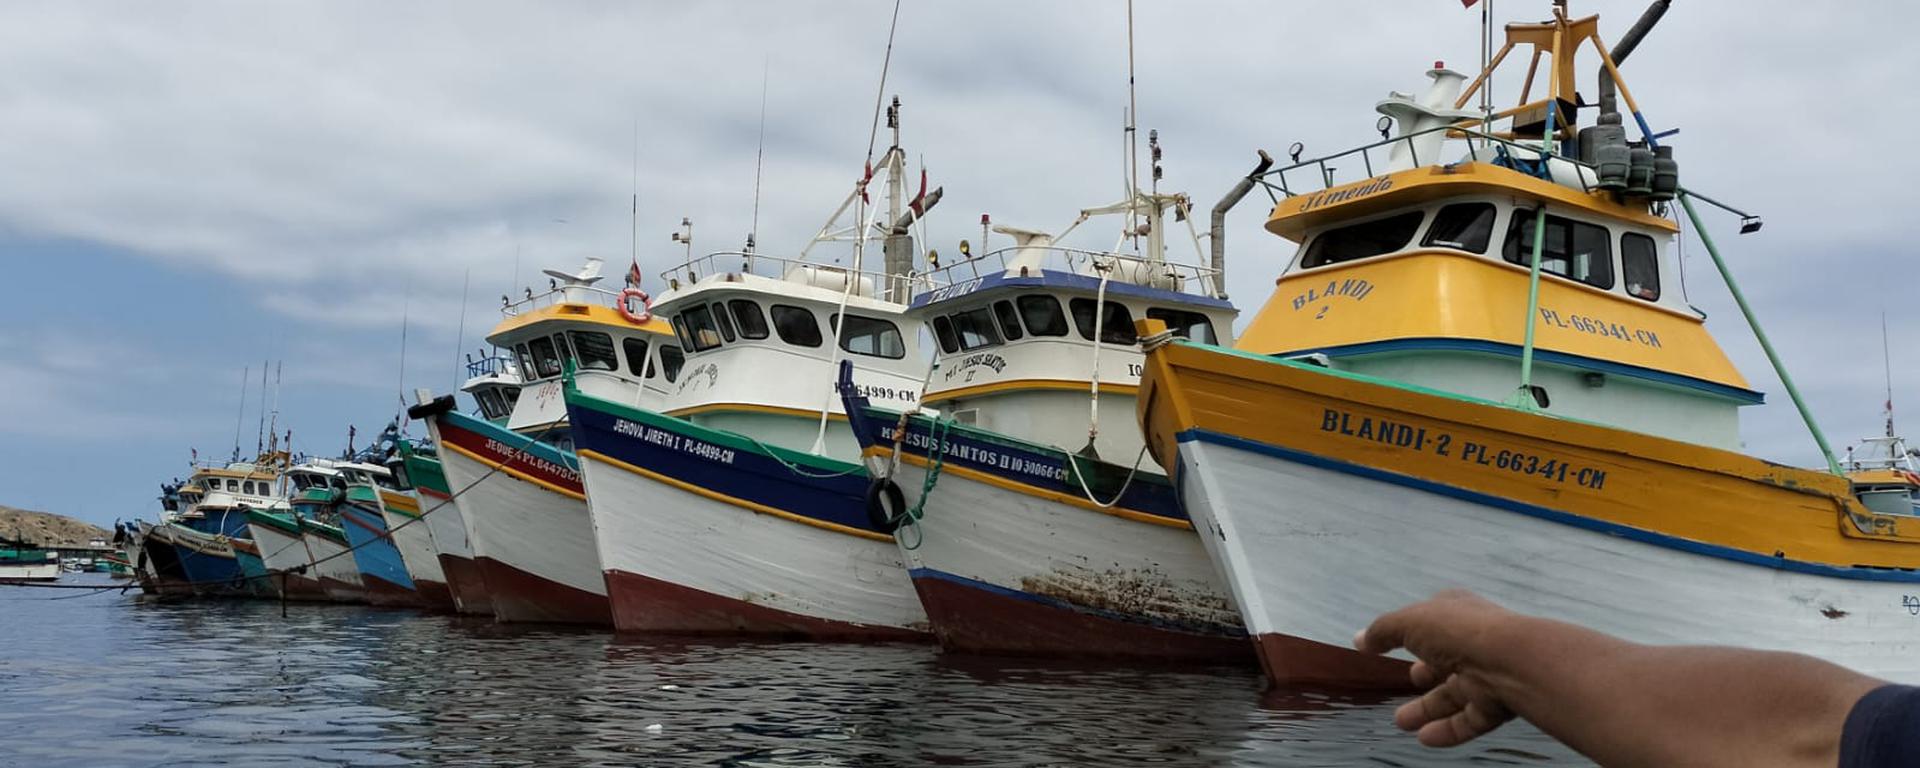 Las combis del mar: pescadores informales clonan matrículas para operar sin control